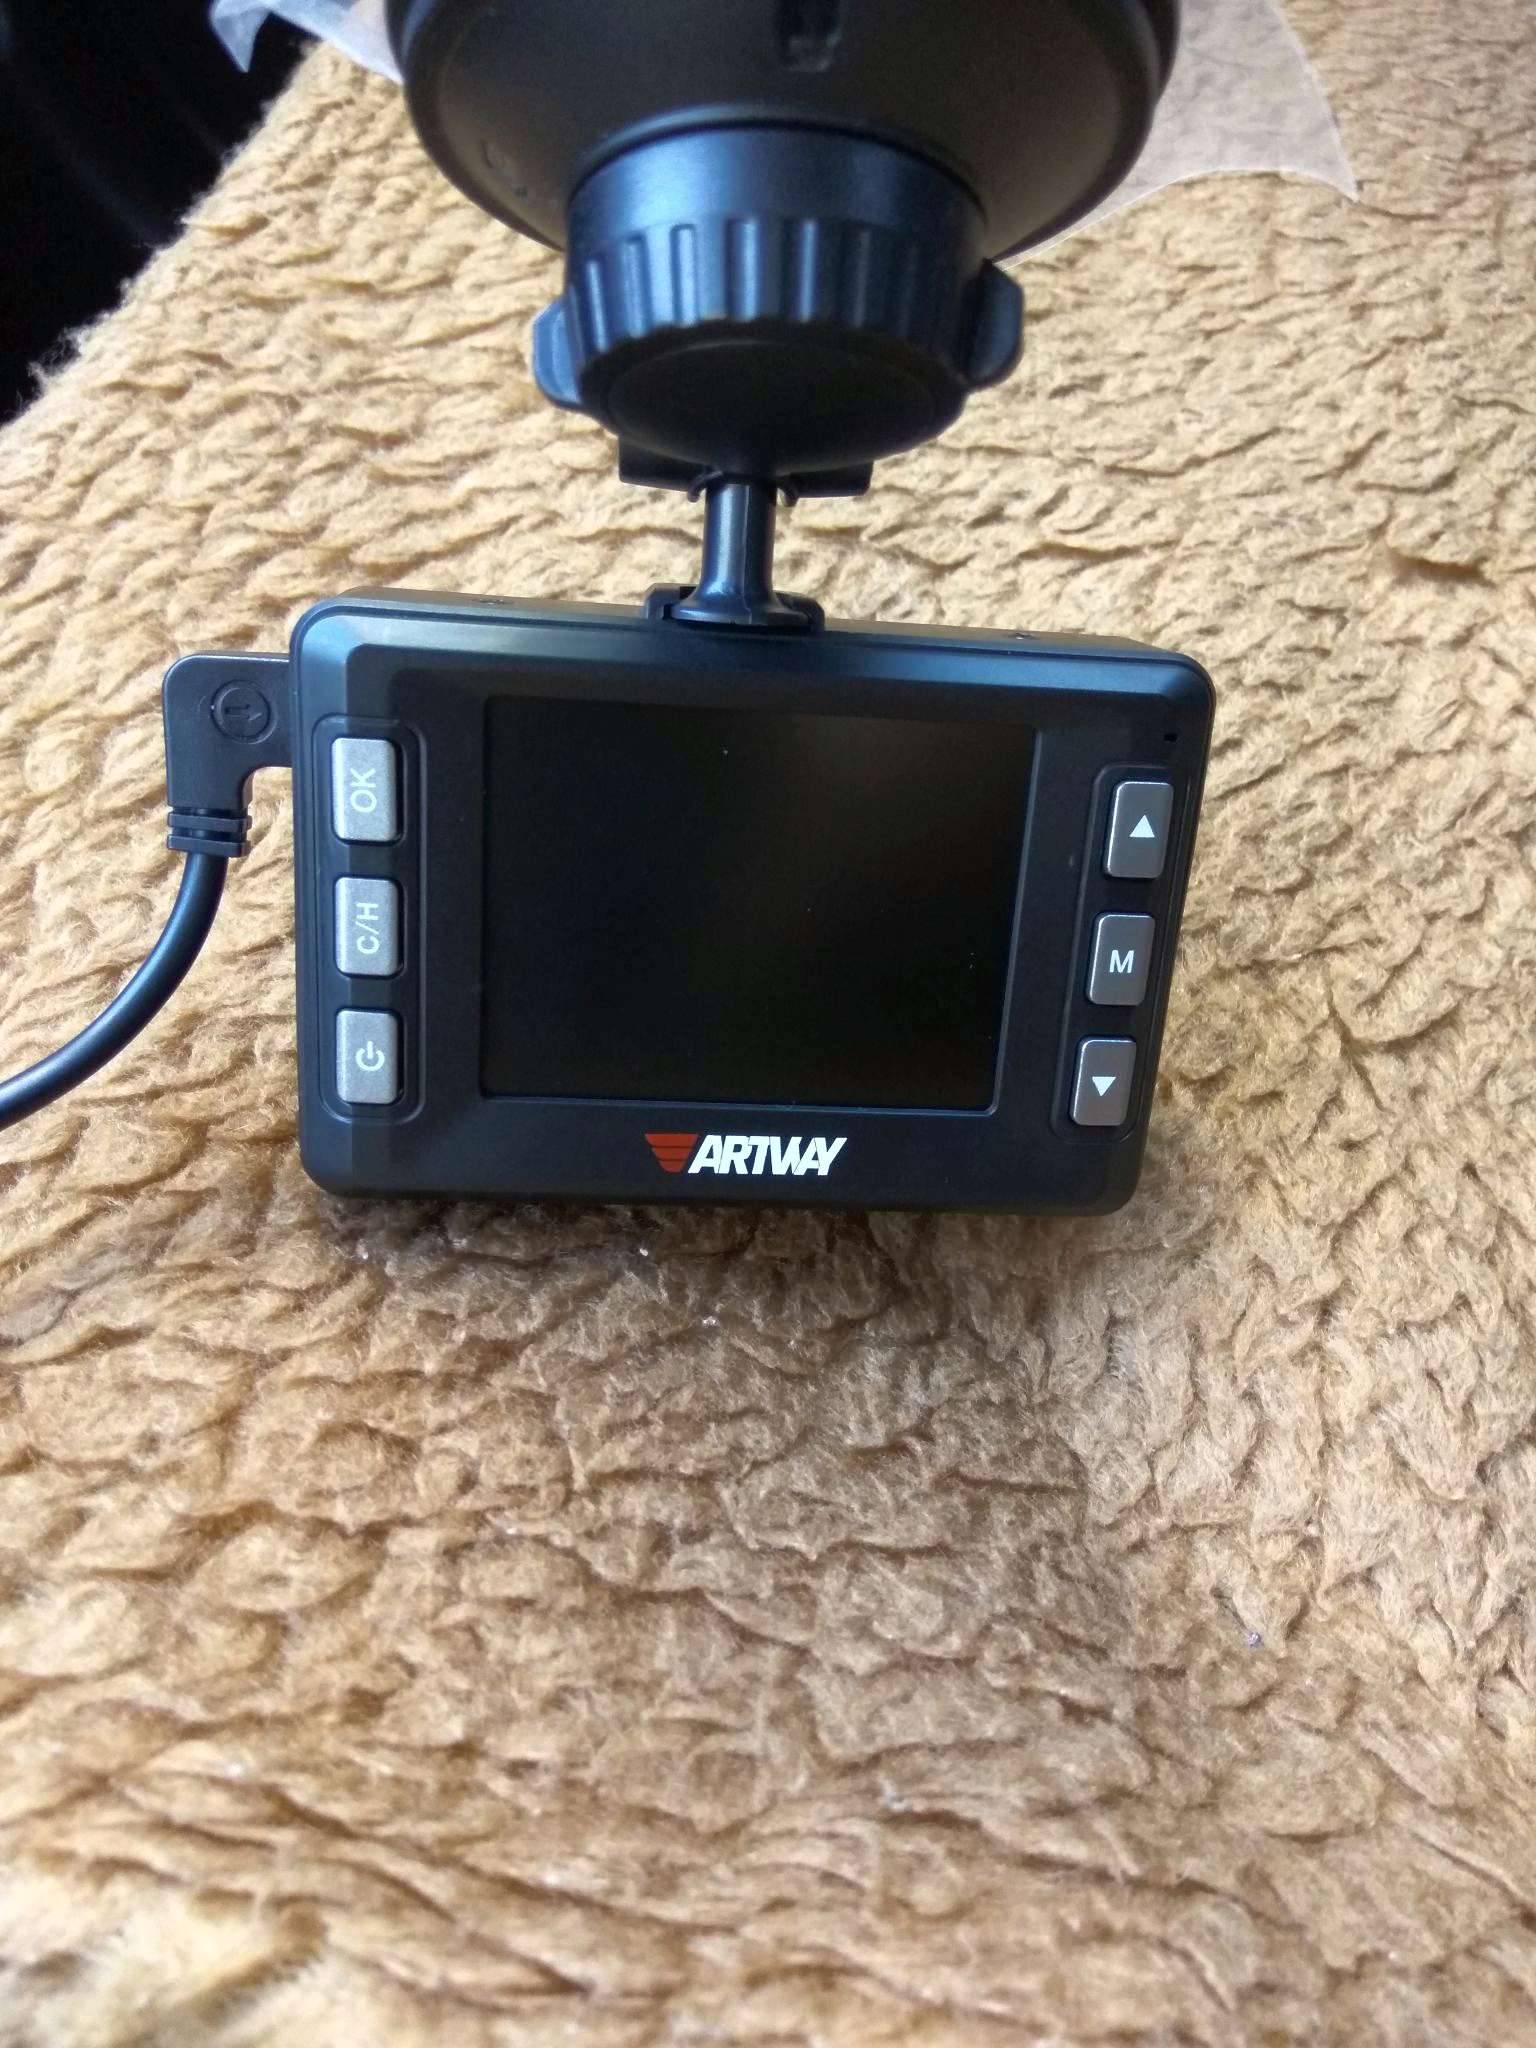 Отзывы artway md-105 combo 3 в 1 compact | видеорегистраторы artway | подробные характеристики, видео обзоры, отзывы покупателей